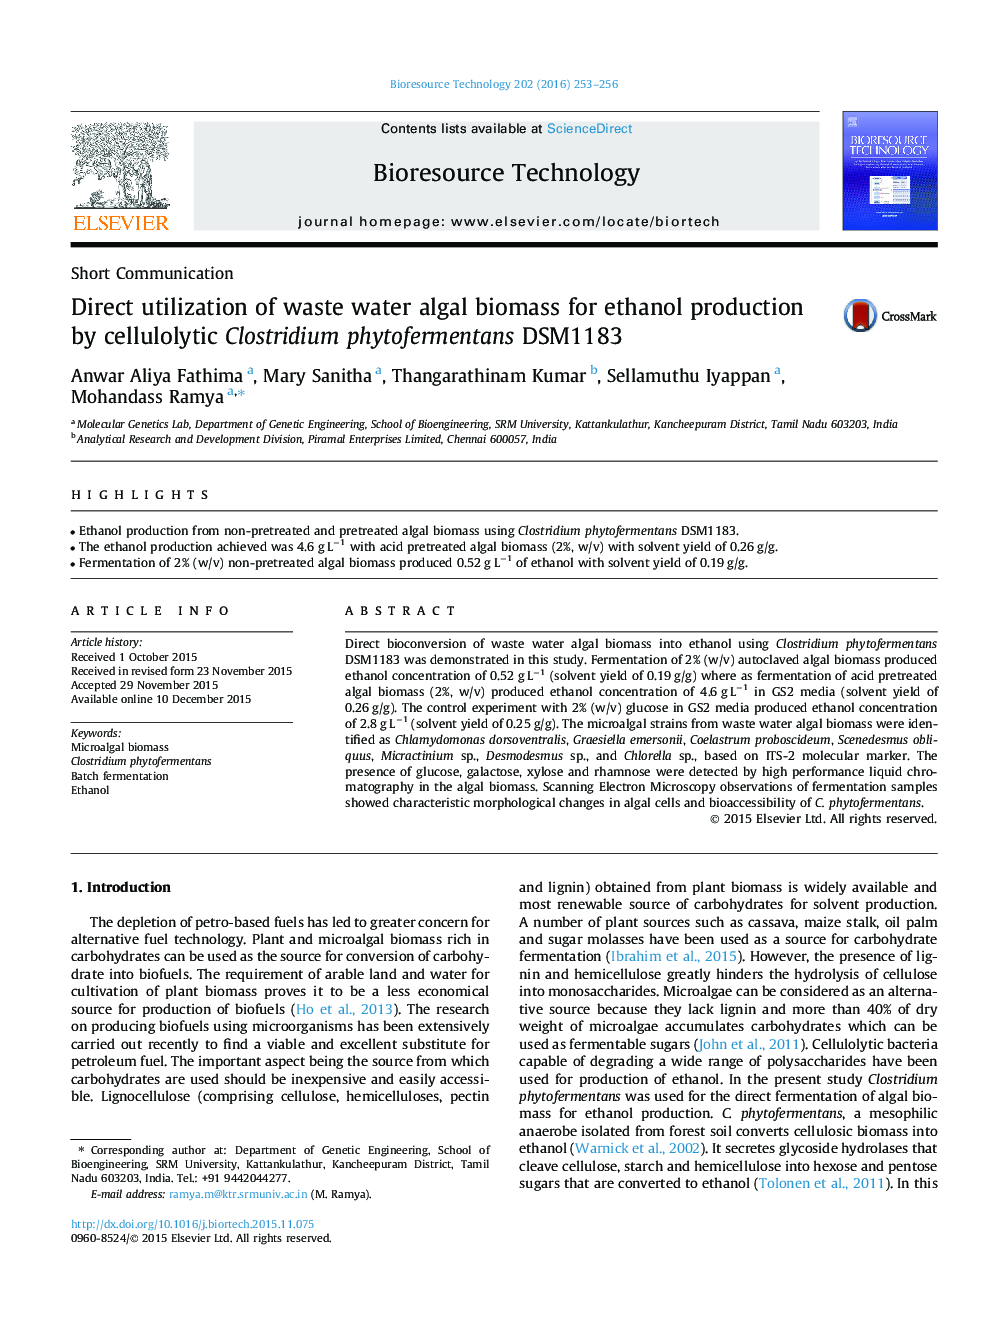 استفاده مستقیم از ضایعات زیست توده جلبکی آب برای تولید اتانول توسط phytofermentans DSM1183 کلستریدیوم cellulolytic 